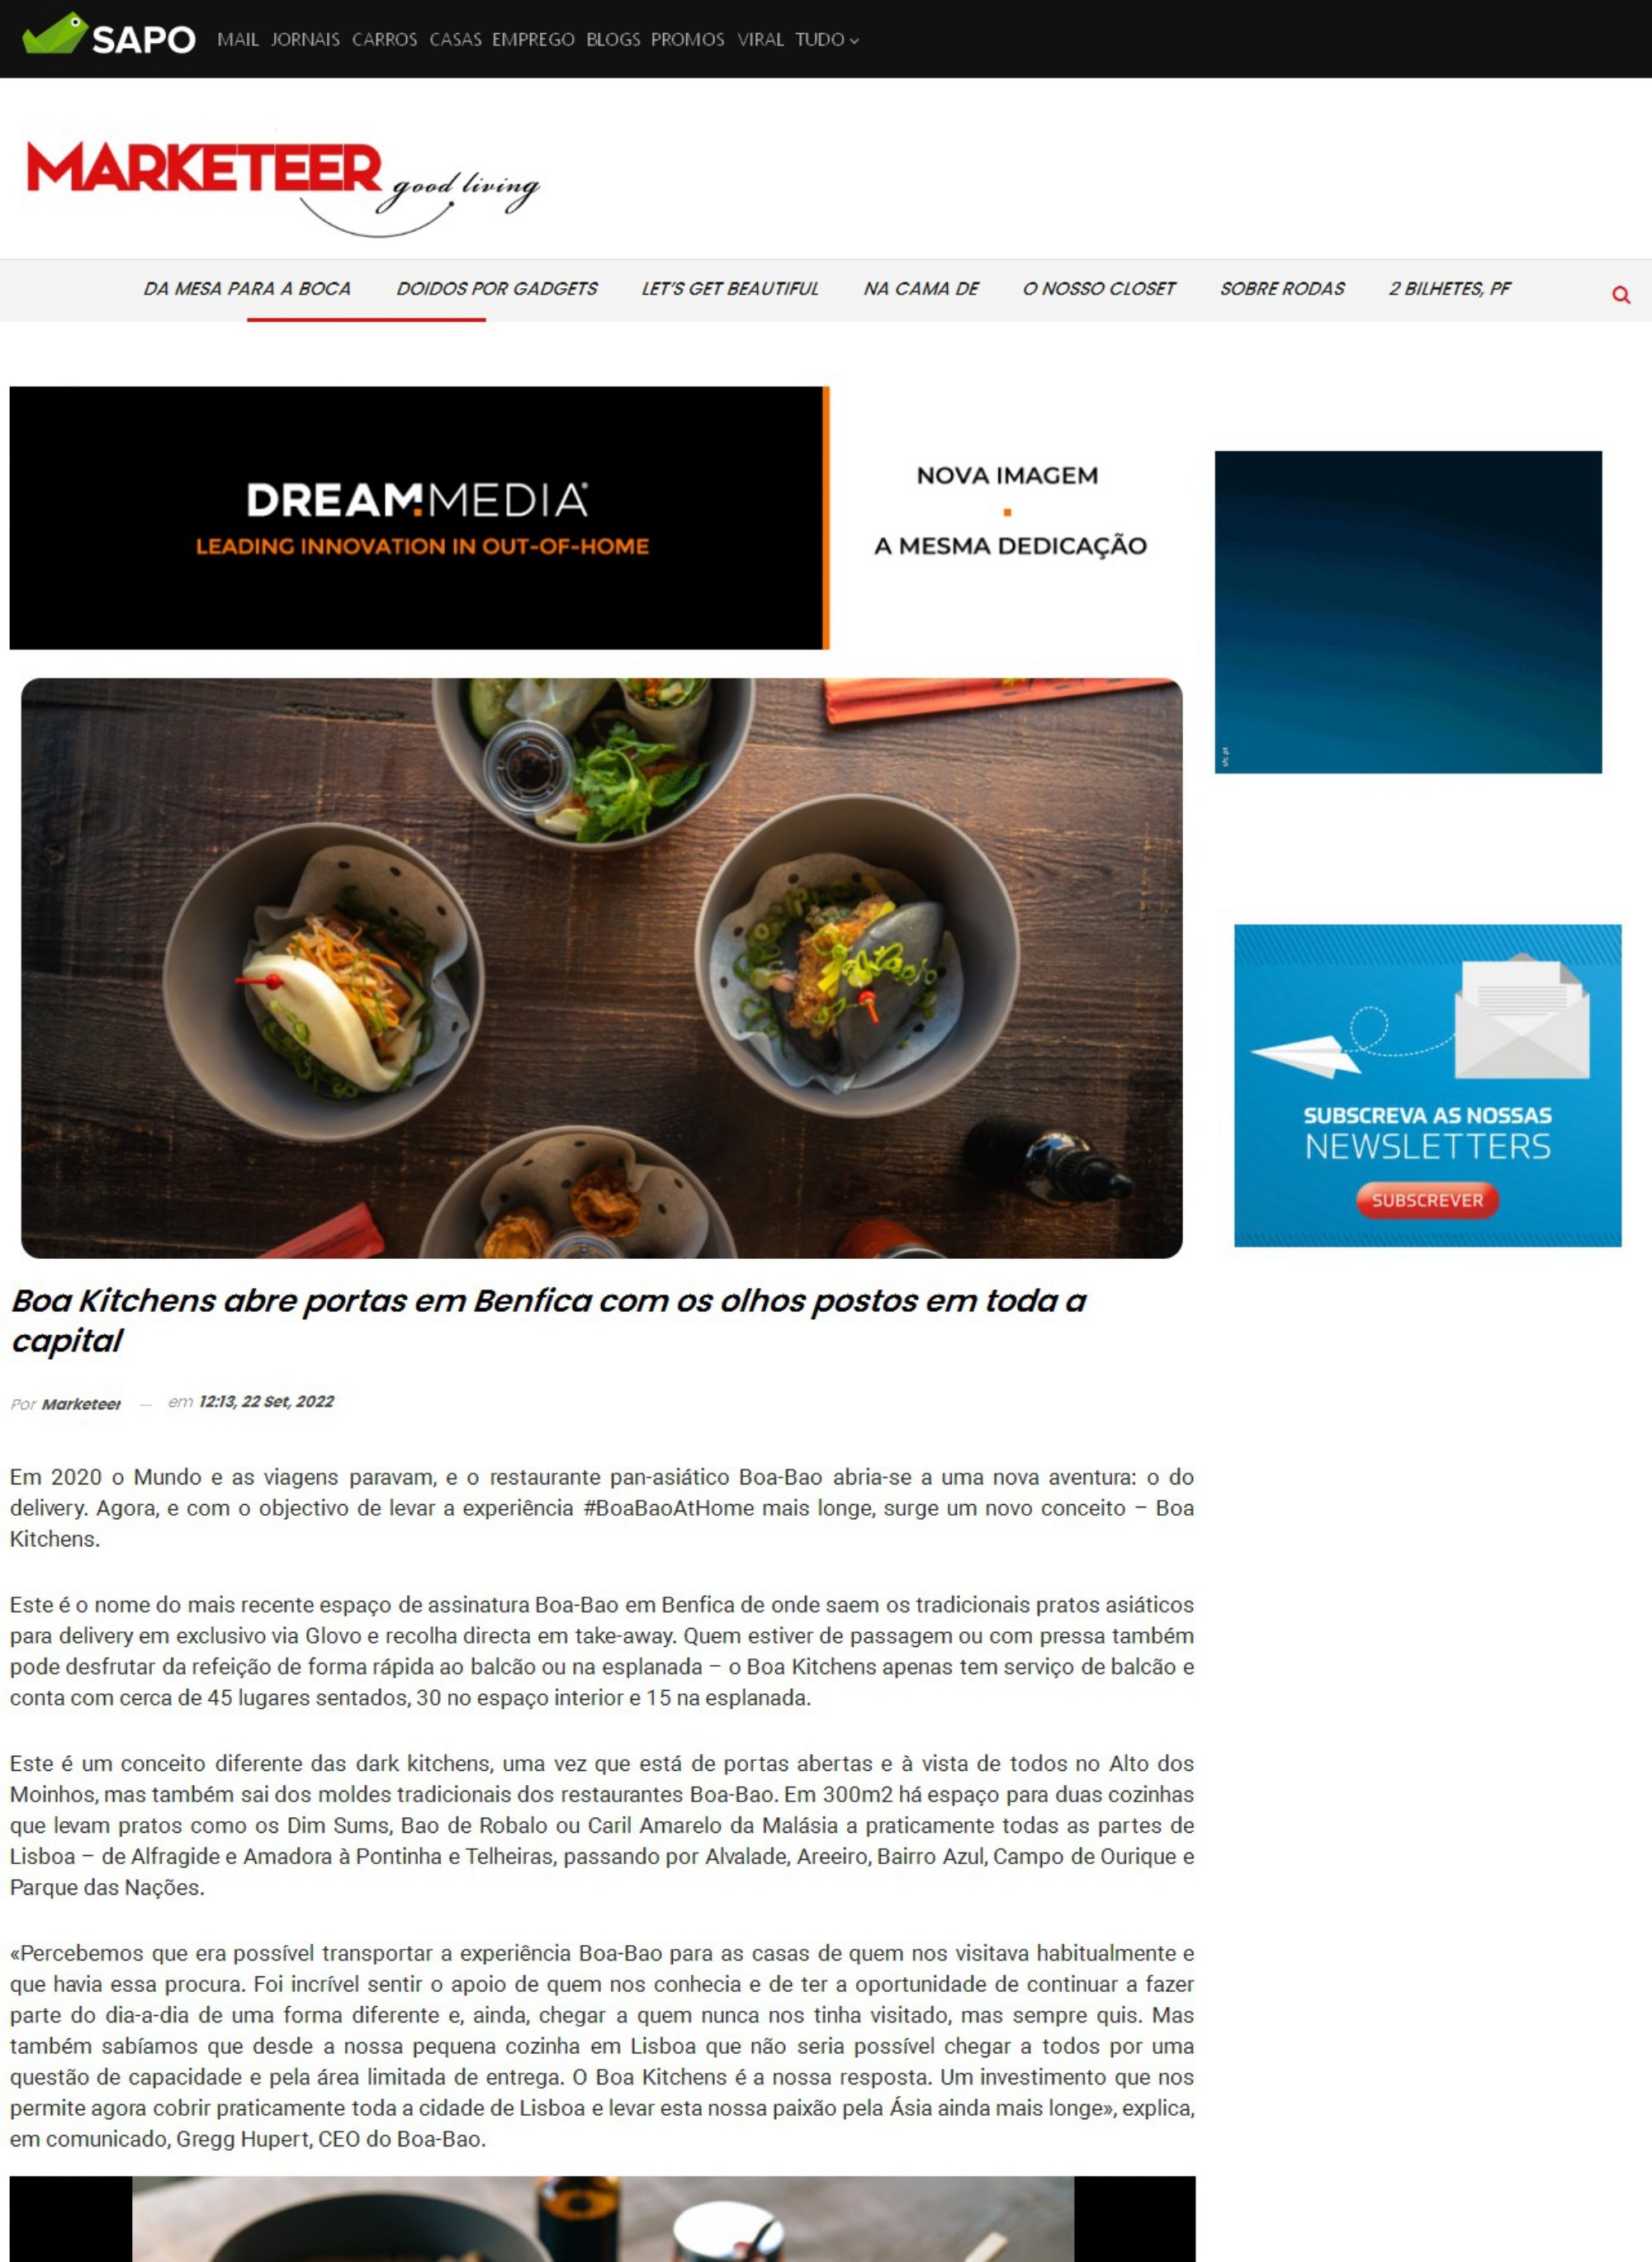 Marketeer Online_Boa Kitchens abre portas em Benfica com os olhos postos em toda a capital_page-0001.jpg